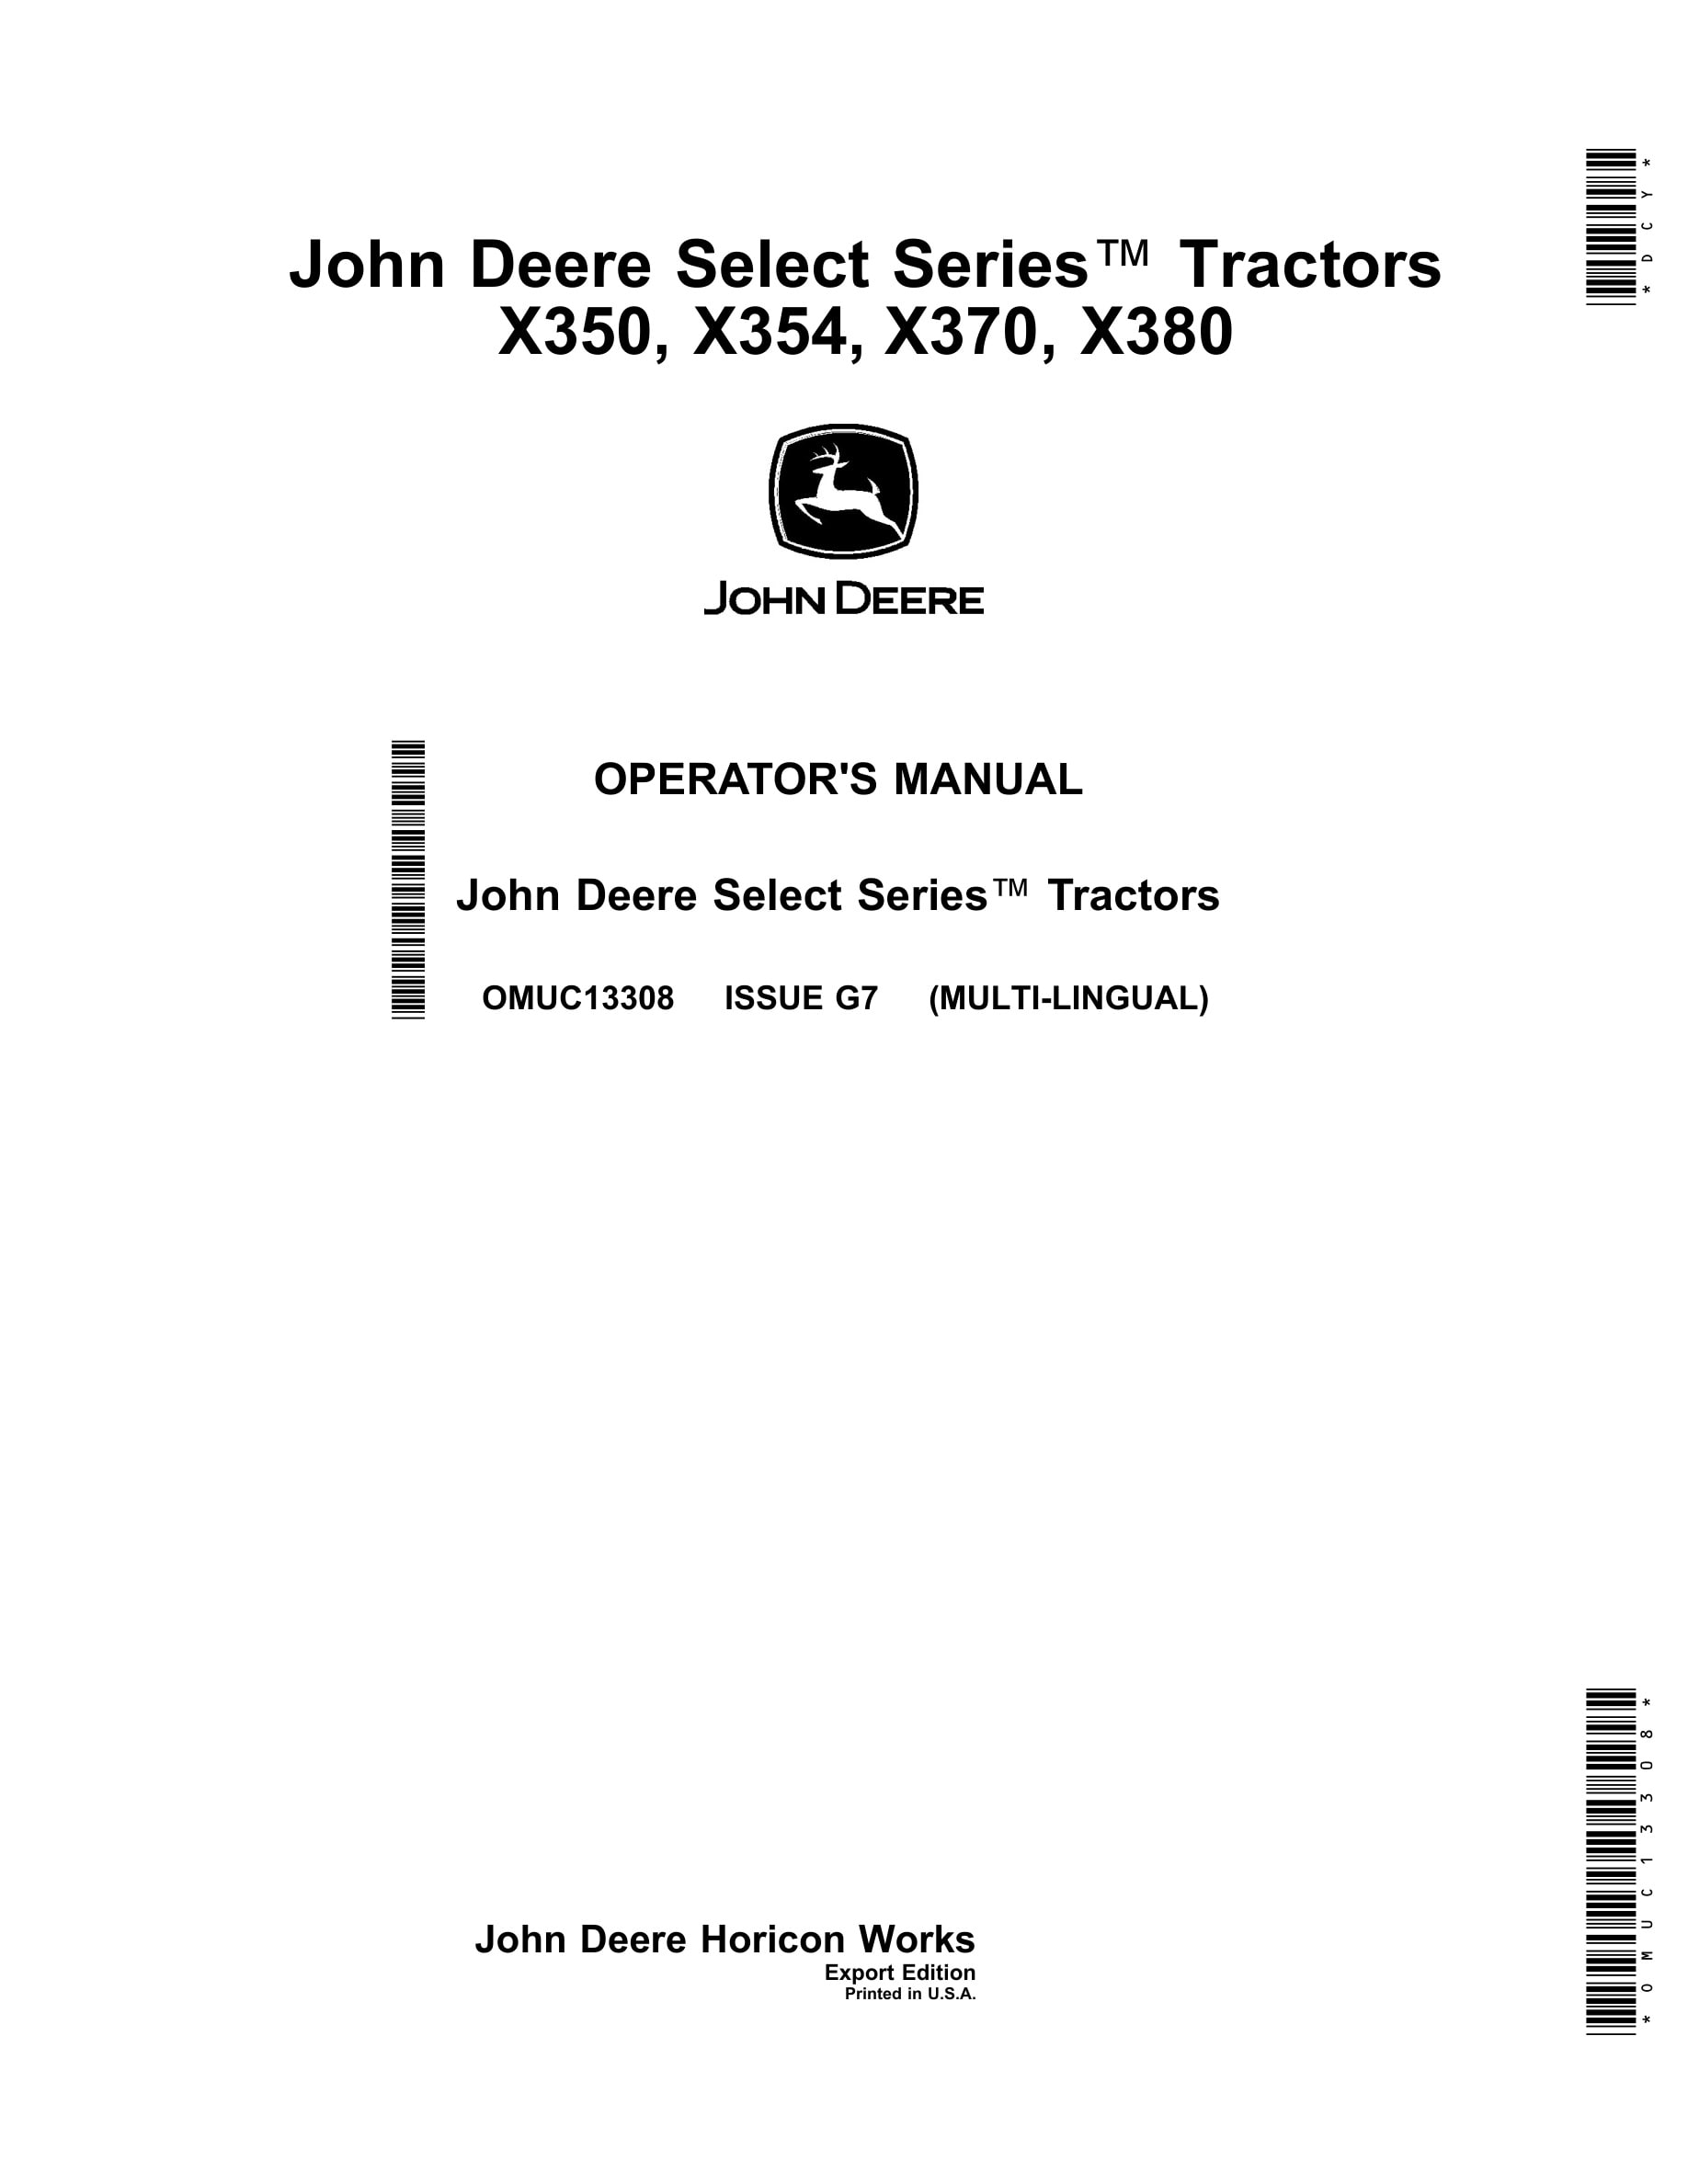 John Deere X350, X354, X370, X380 Tractors Operator Manuals OMUC13308-1